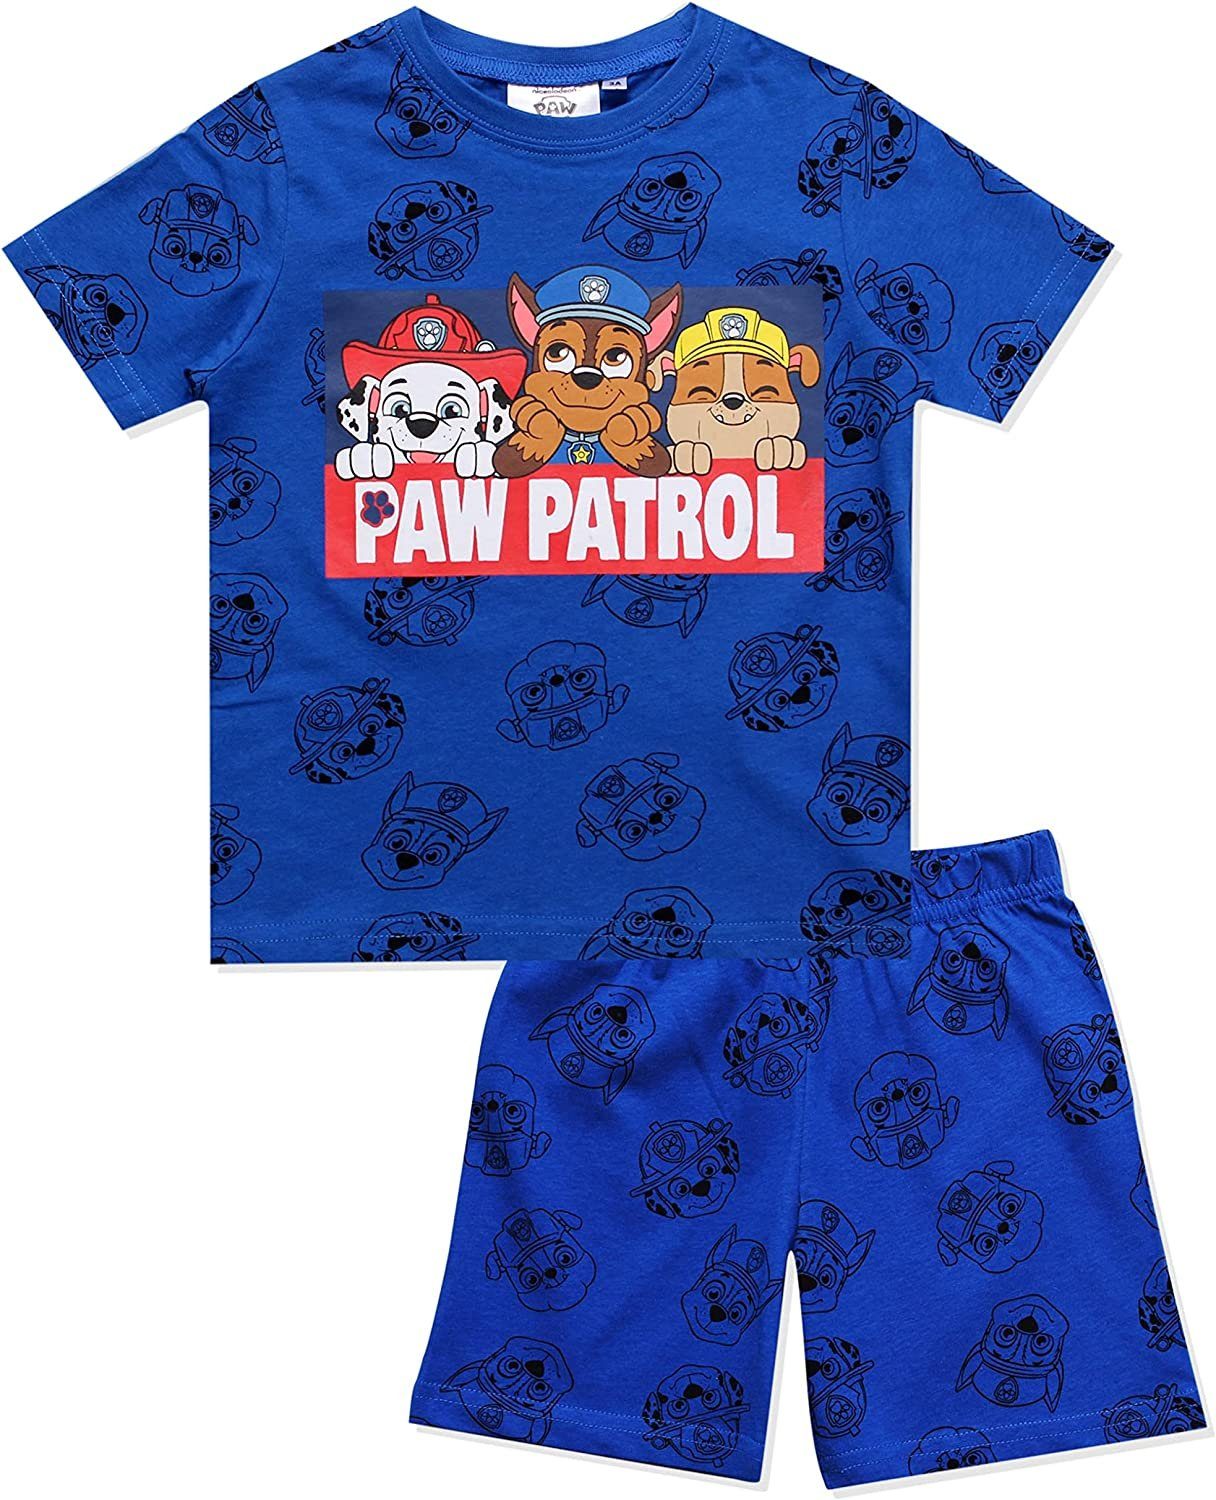 PAW PATROL Pyjama PAW PATROL Kinder Pyjama Shorty Schlafanzug Jungen und Mädchen Blau und Grau Gr. 98 104 110 116 128 - 2 3 4 5 6 7 8 910 Jahre Dunkelblau